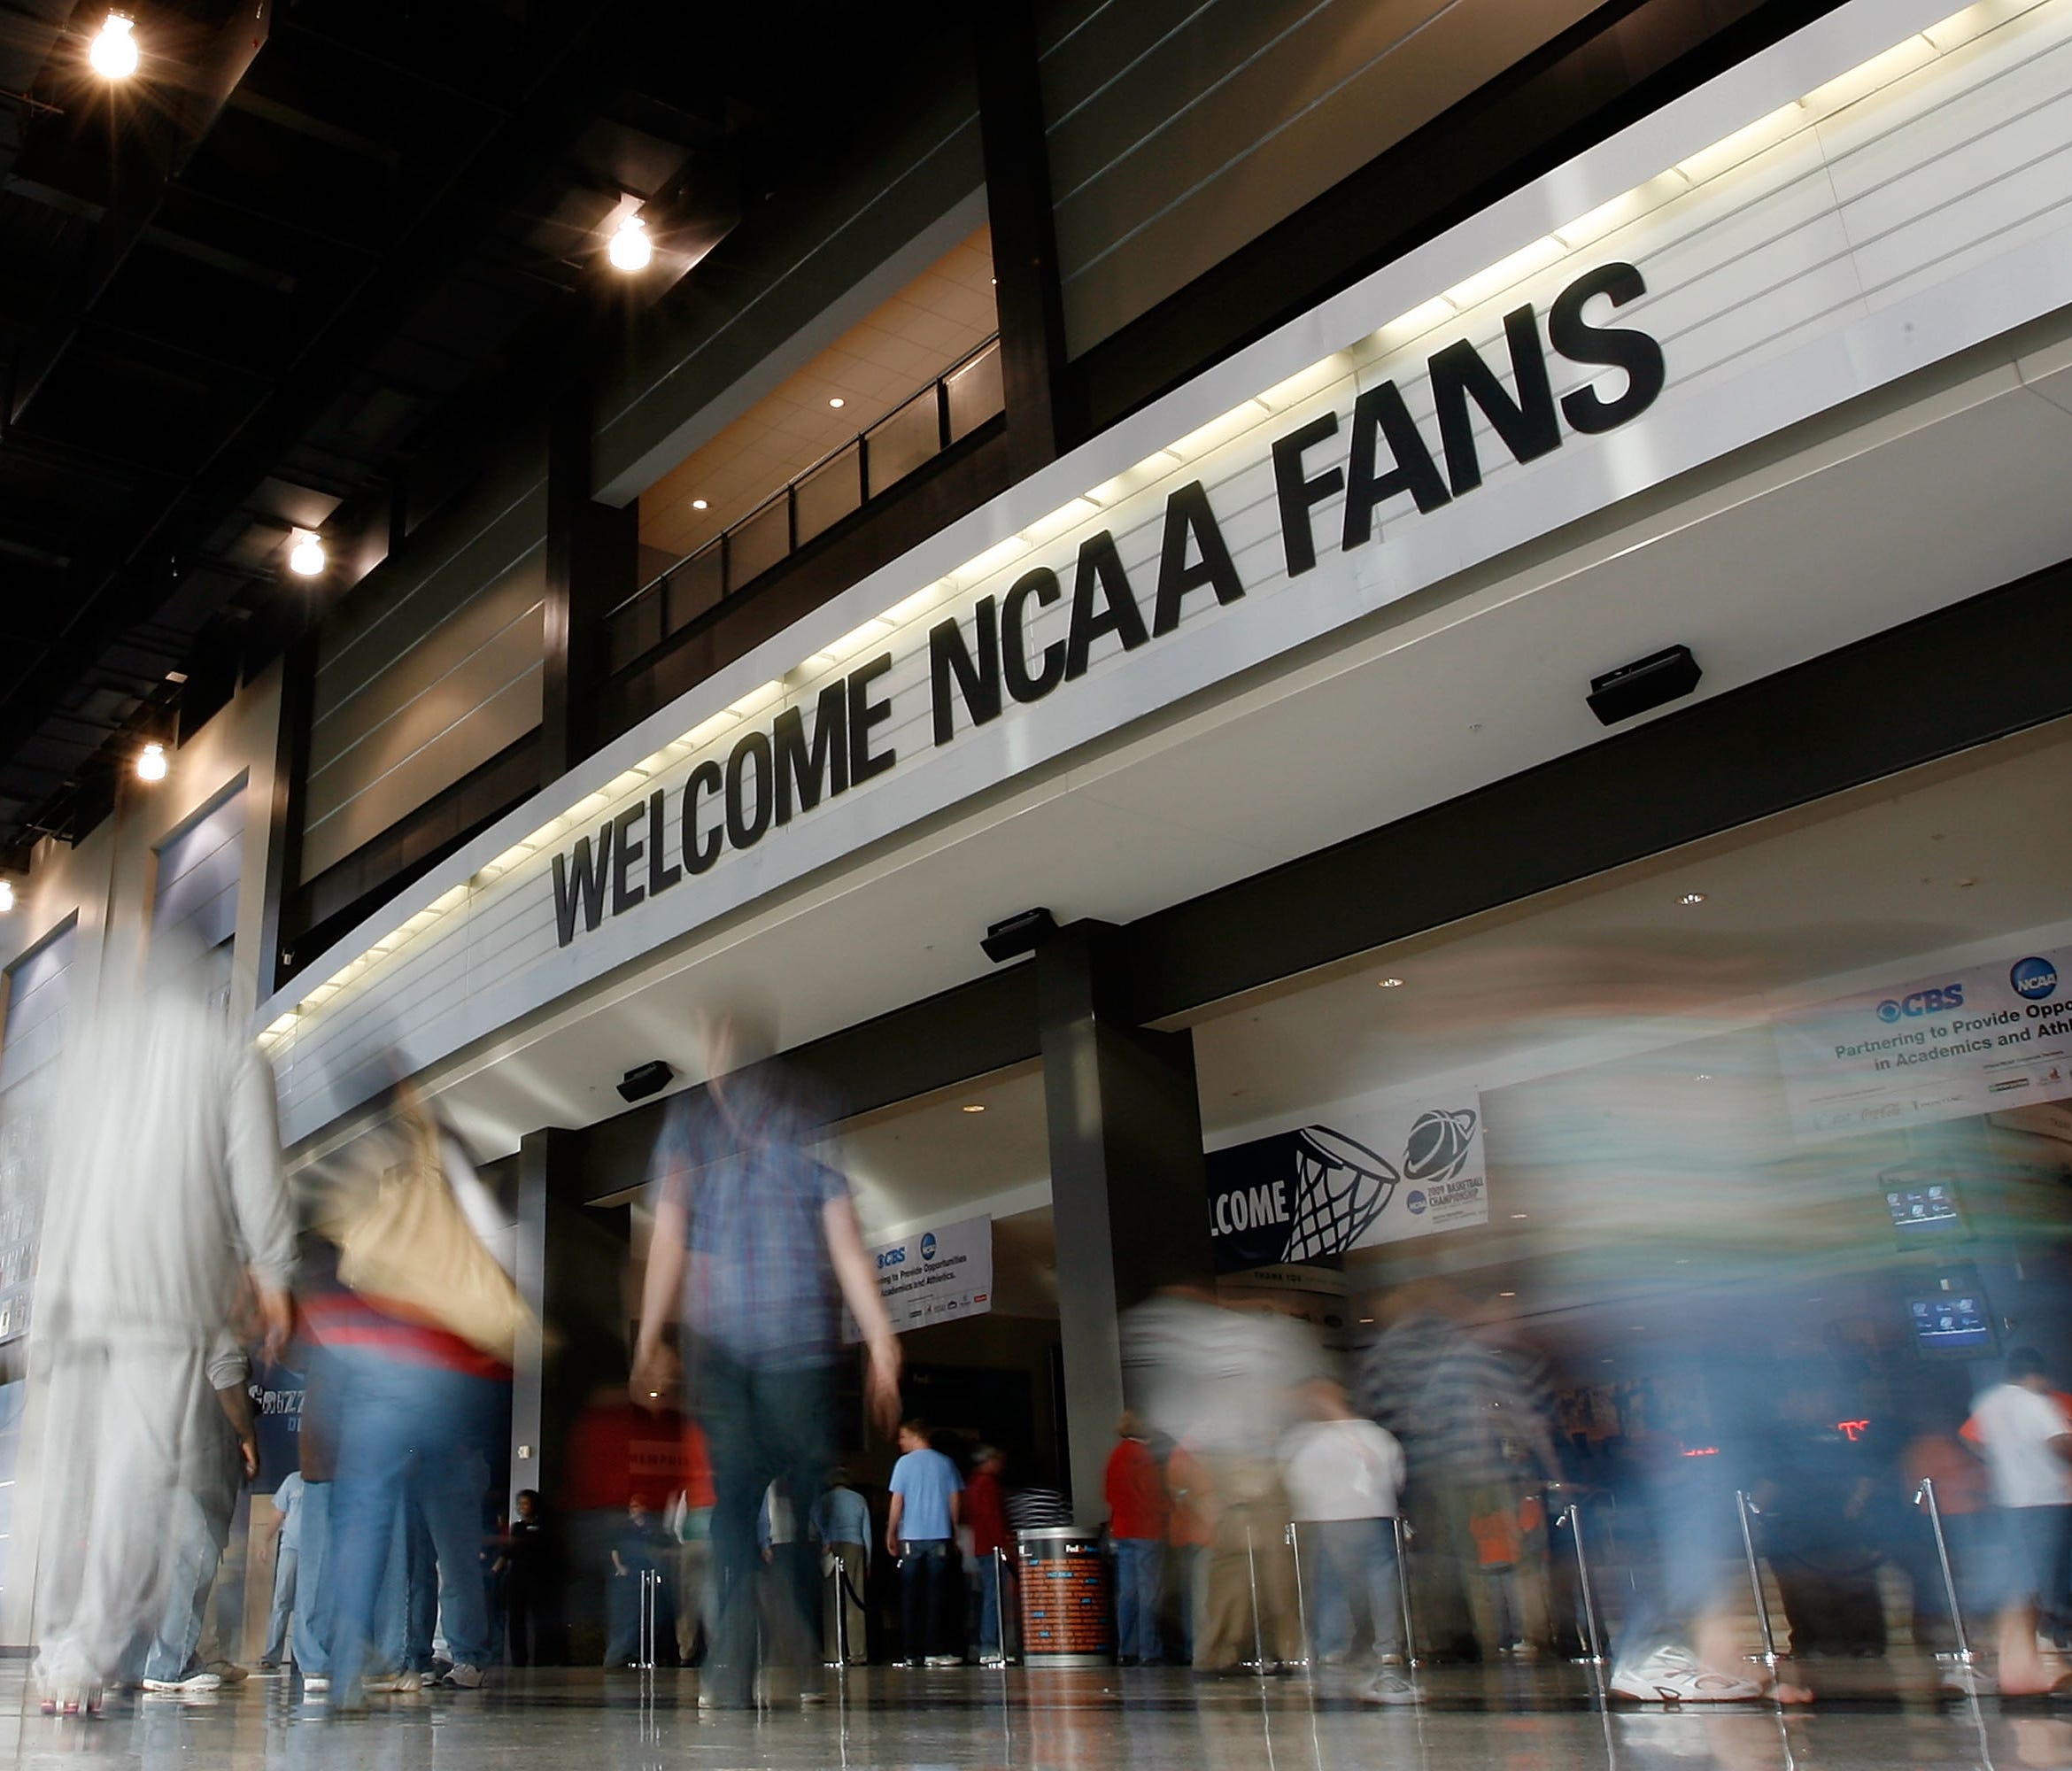 Marriott International has announced a partnership with the NCAA.